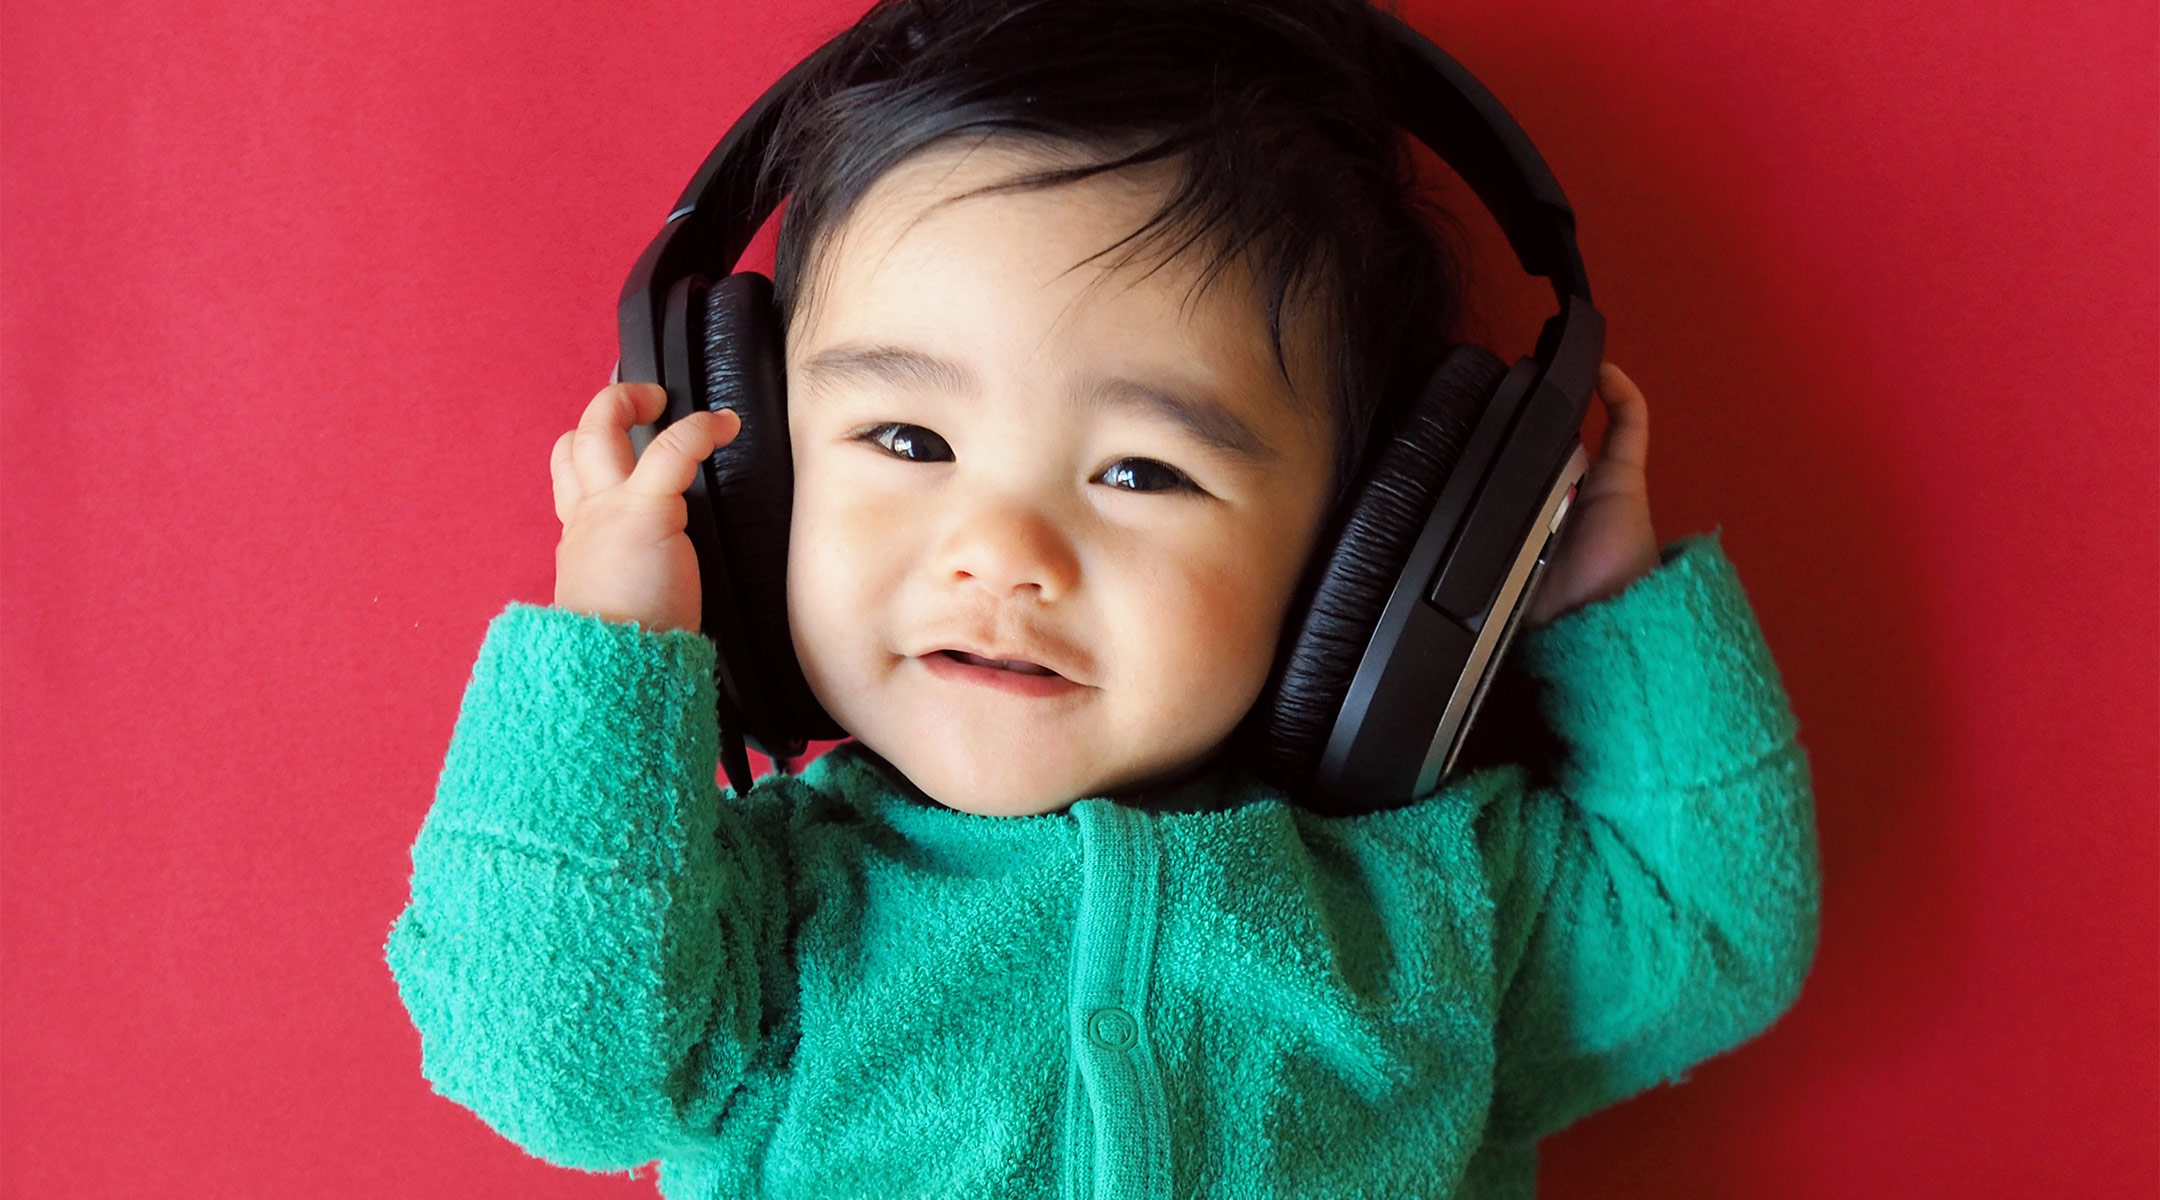 baby headphones